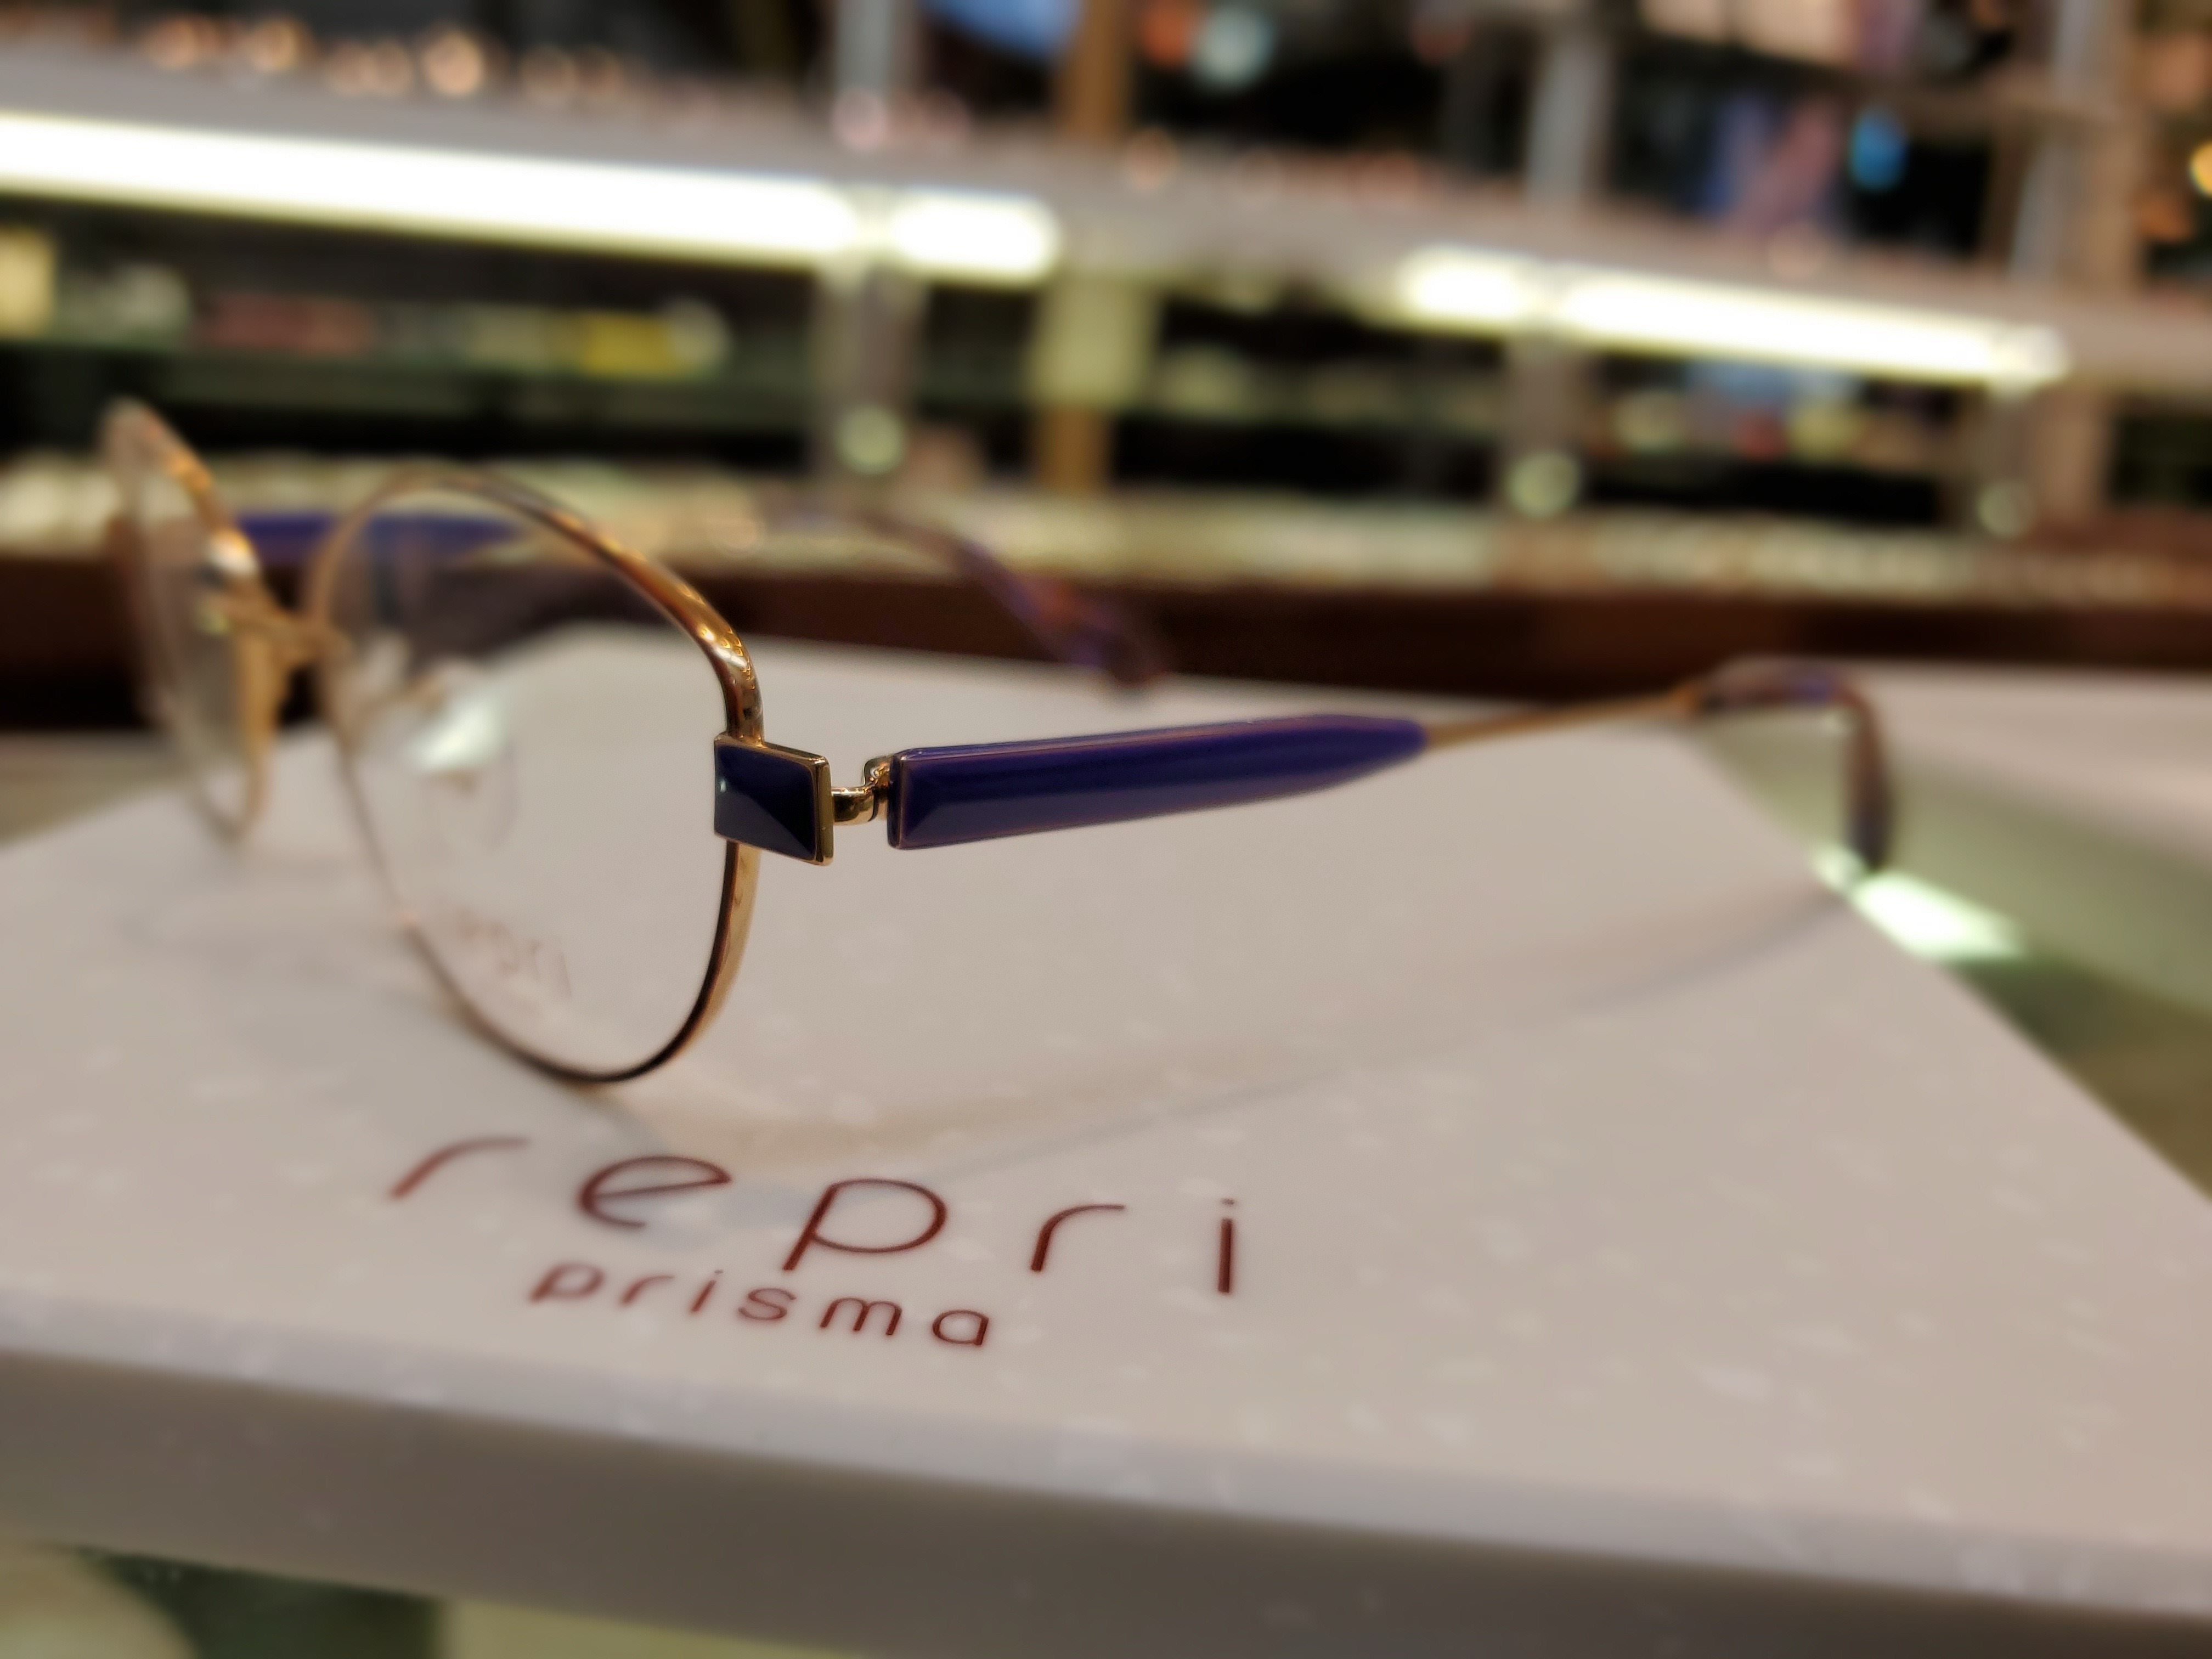 repri prisma(レプリ プリズマ)入荷！: メガネのプロ カナイメガネ